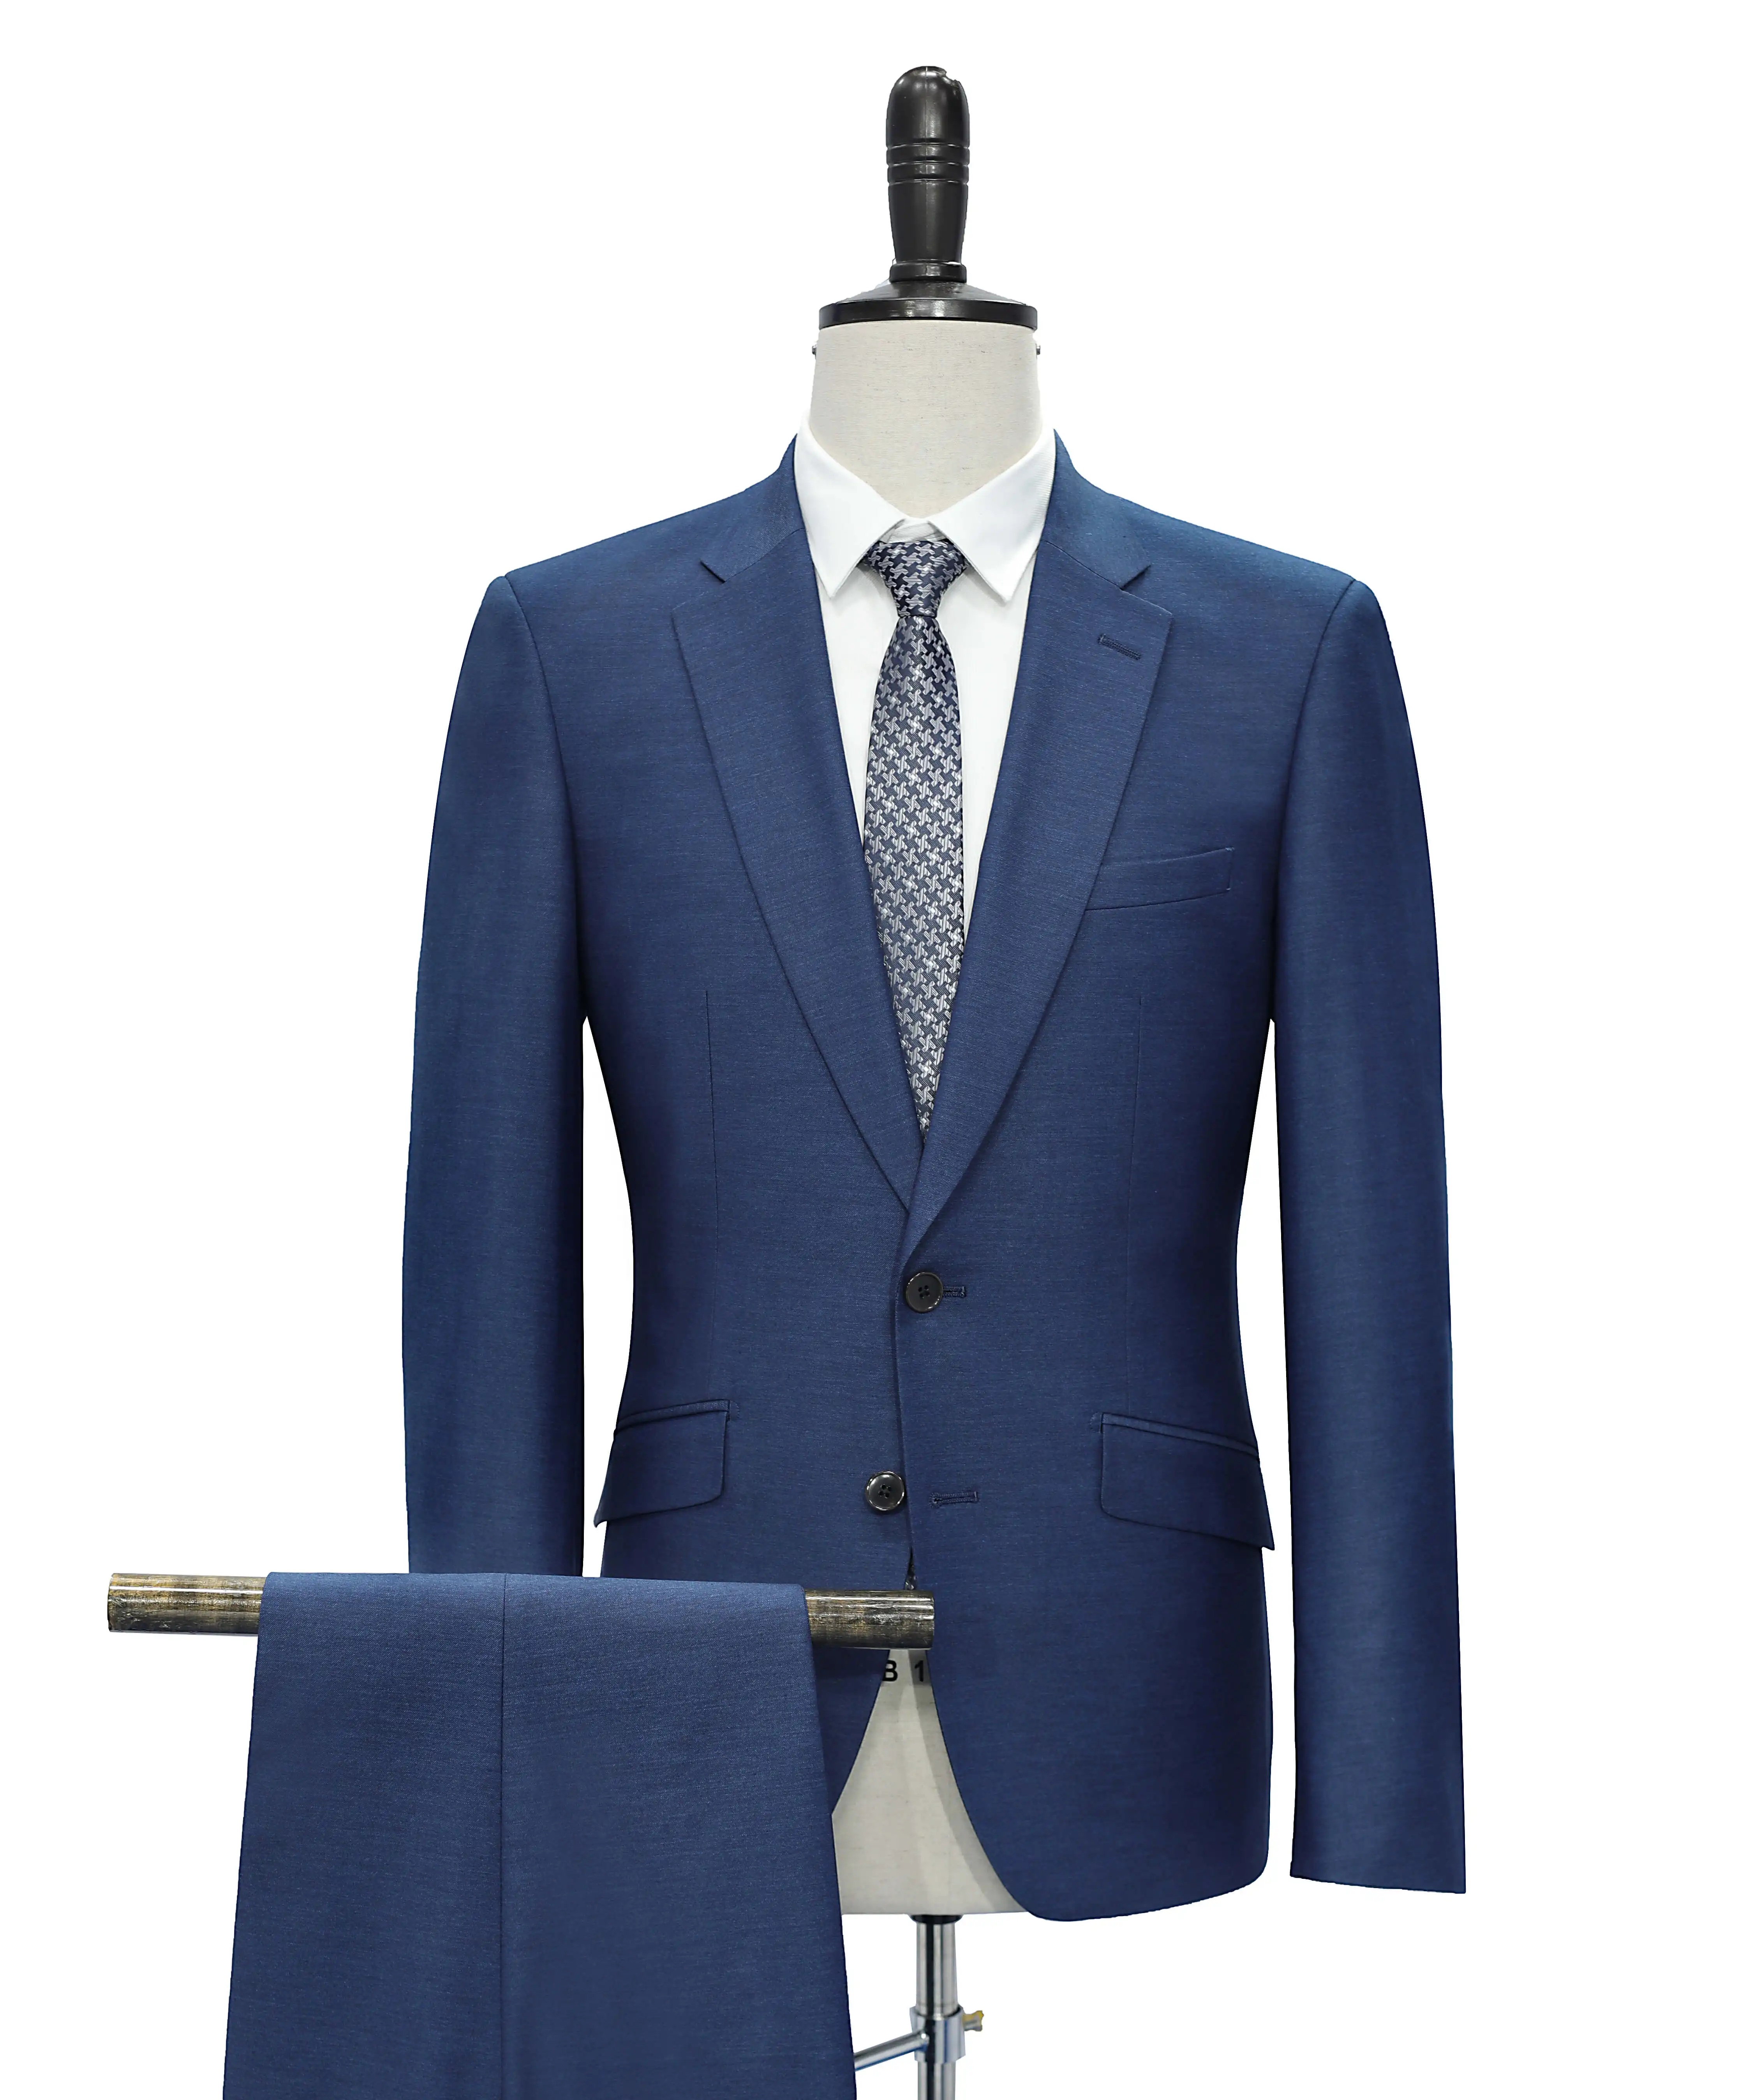 

Coat Pant Men Suit Latest Tailor Made Suits Business Suits Single Breasted Button Fly OEM Service Costumes De Mariage Pour, Blue suit